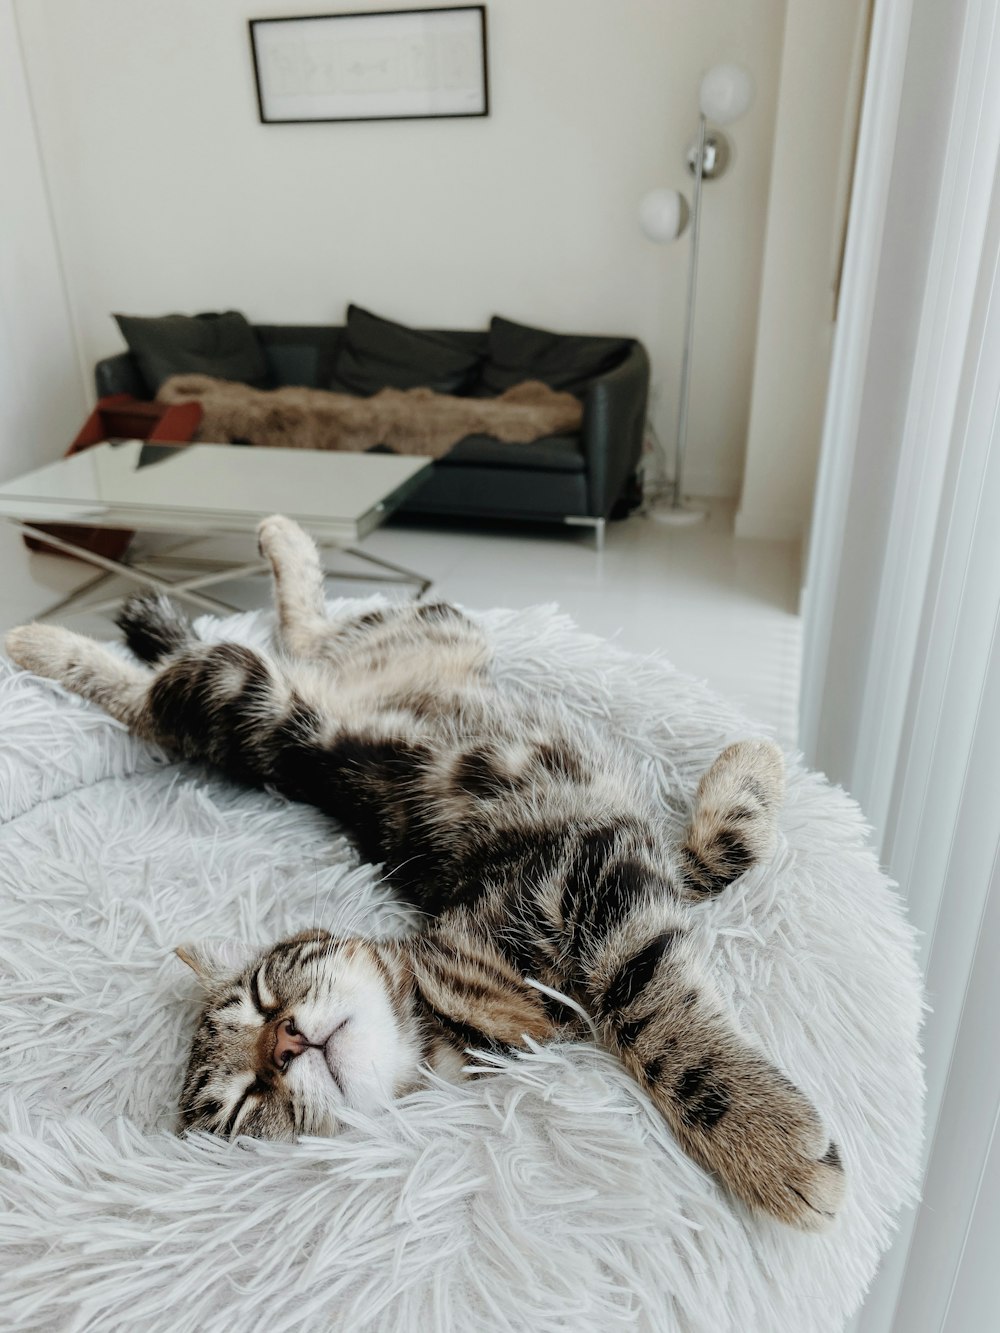 gato atigrado marrón acostado en una cama blanca